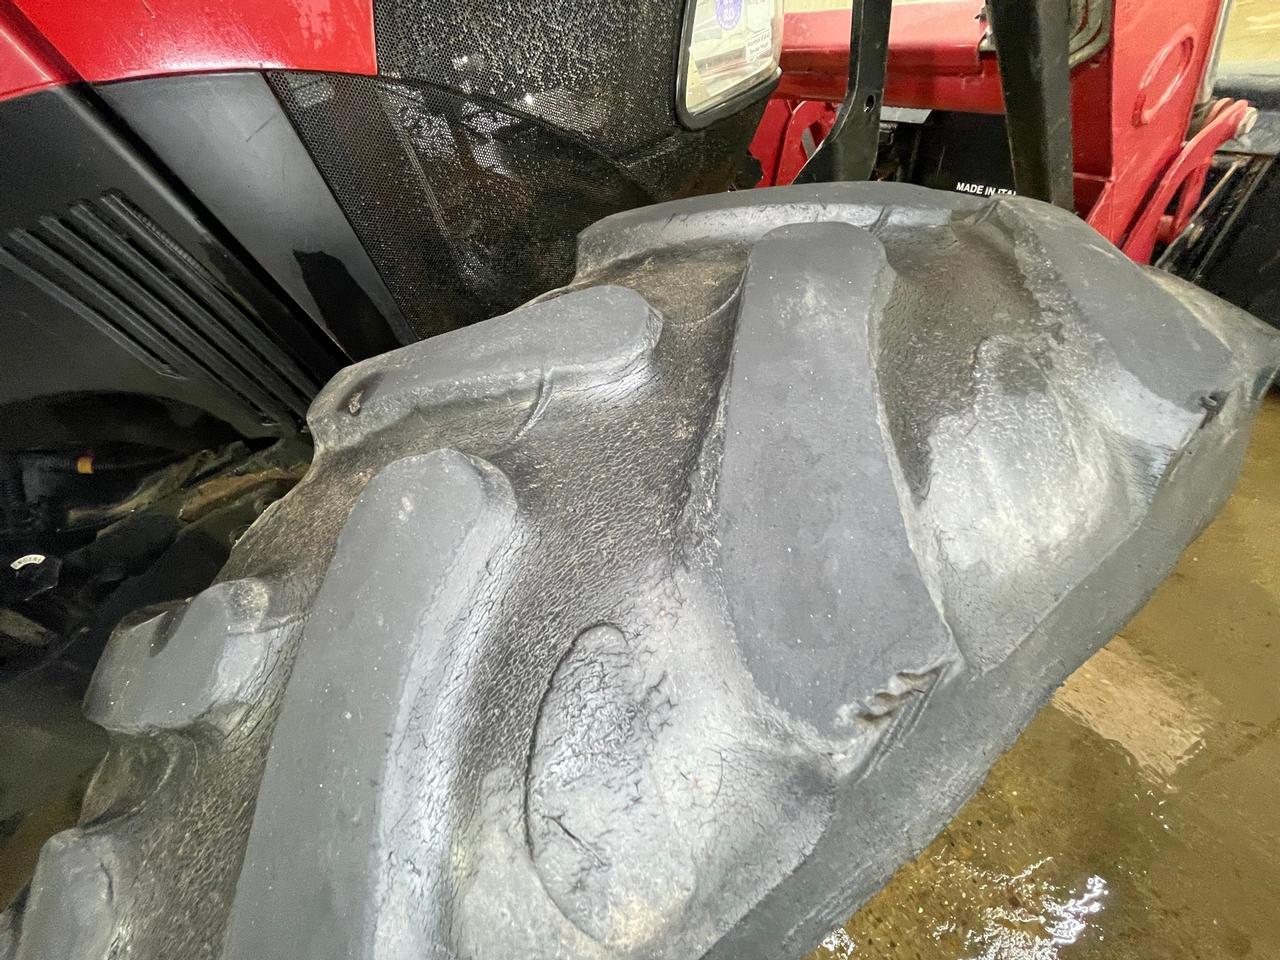 2015 Case IH Farmall 75C  Tractor